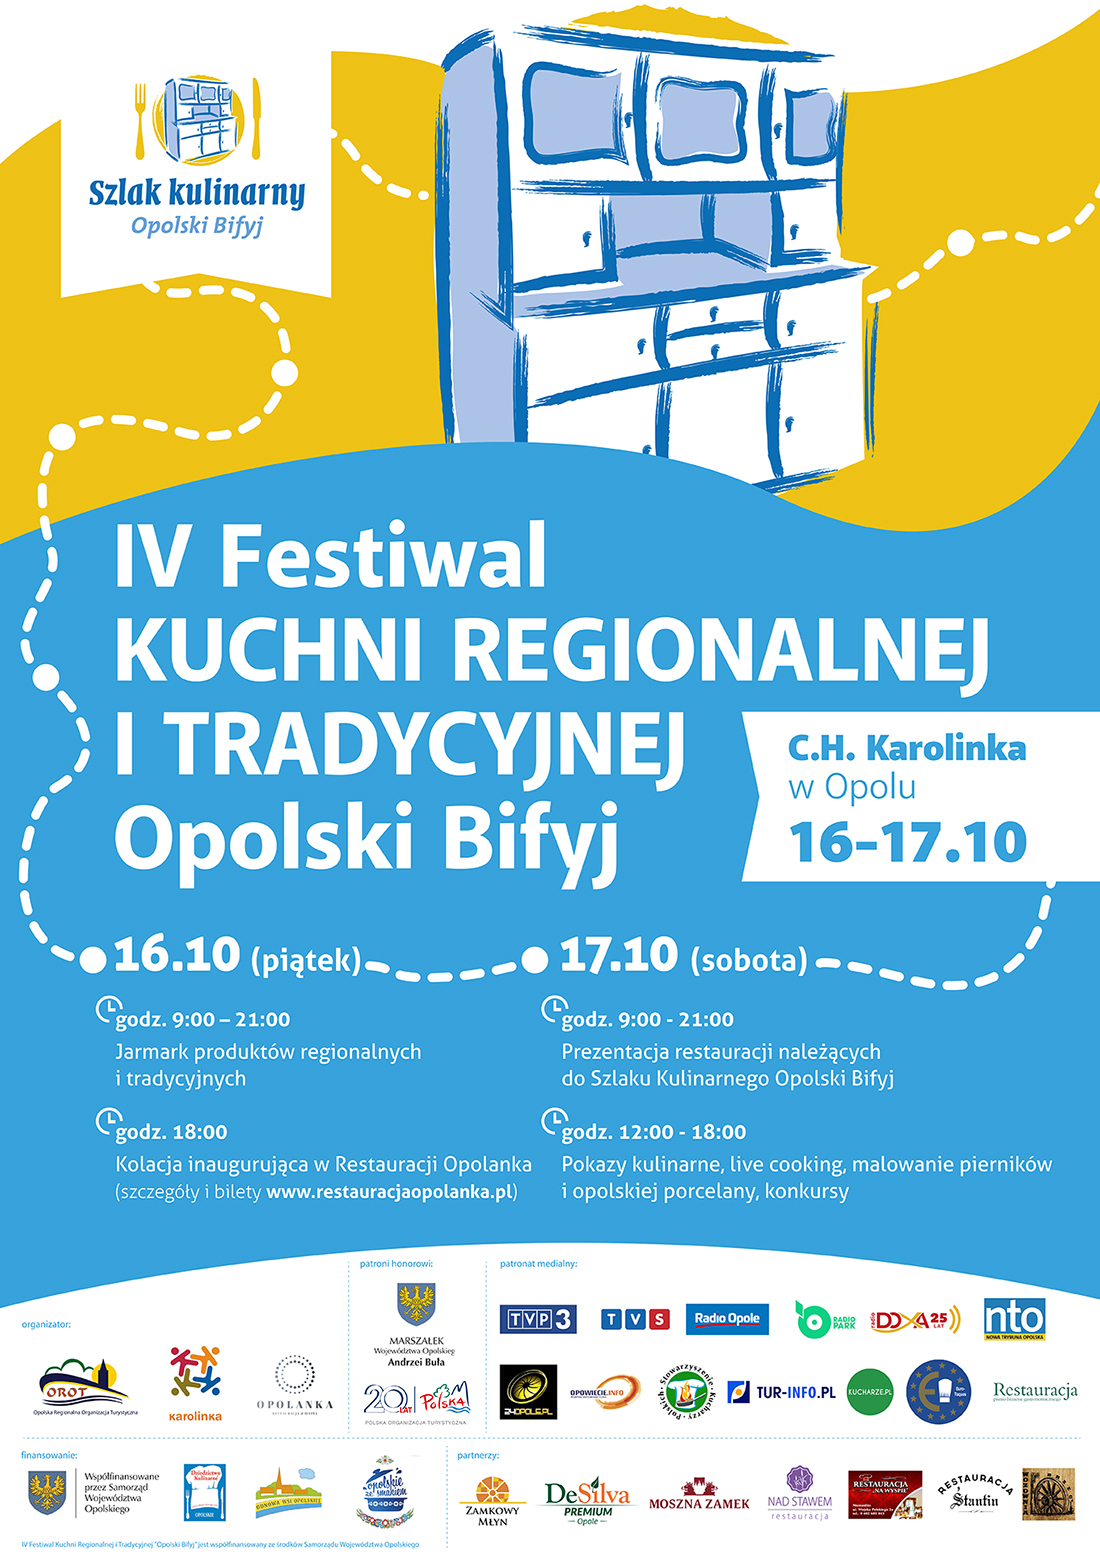 IV Festiwal Kuchni Regionalnej i Tradycyjnej „Opolski Bifyj” stawia na lokalność